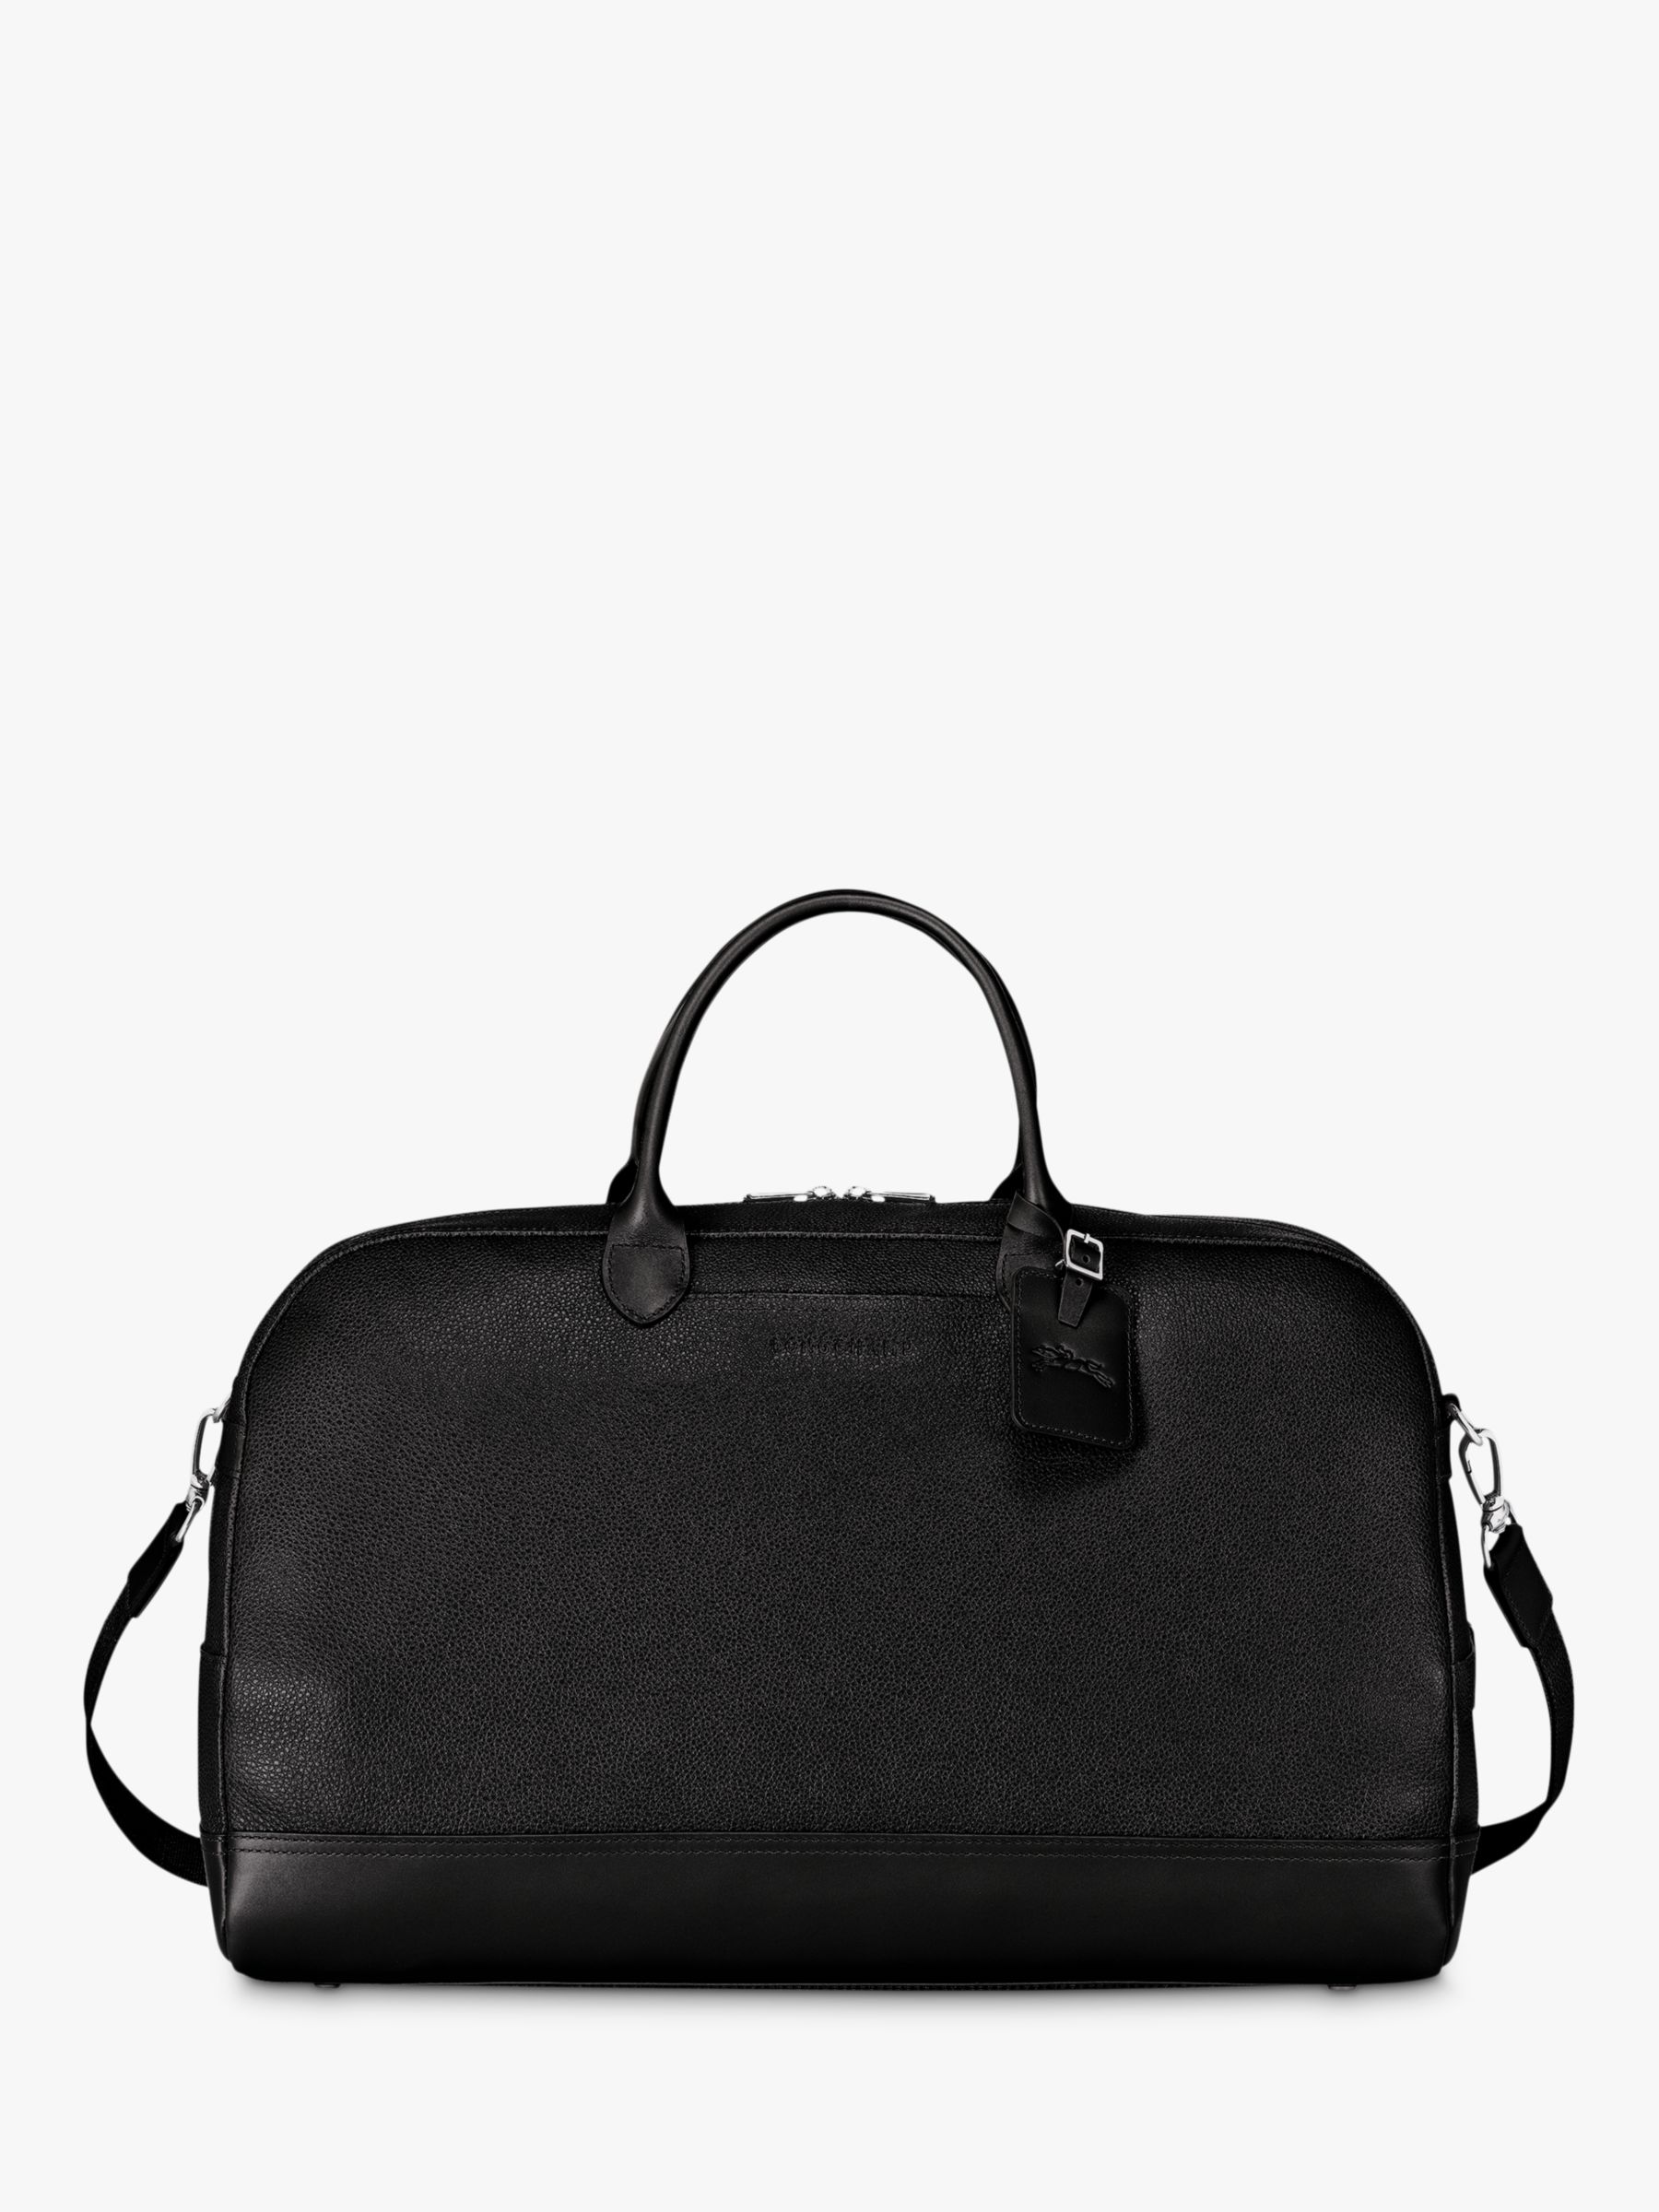 Longchamp Le Foulonné Large Leather Travel Bag, Black at John Lewis ...